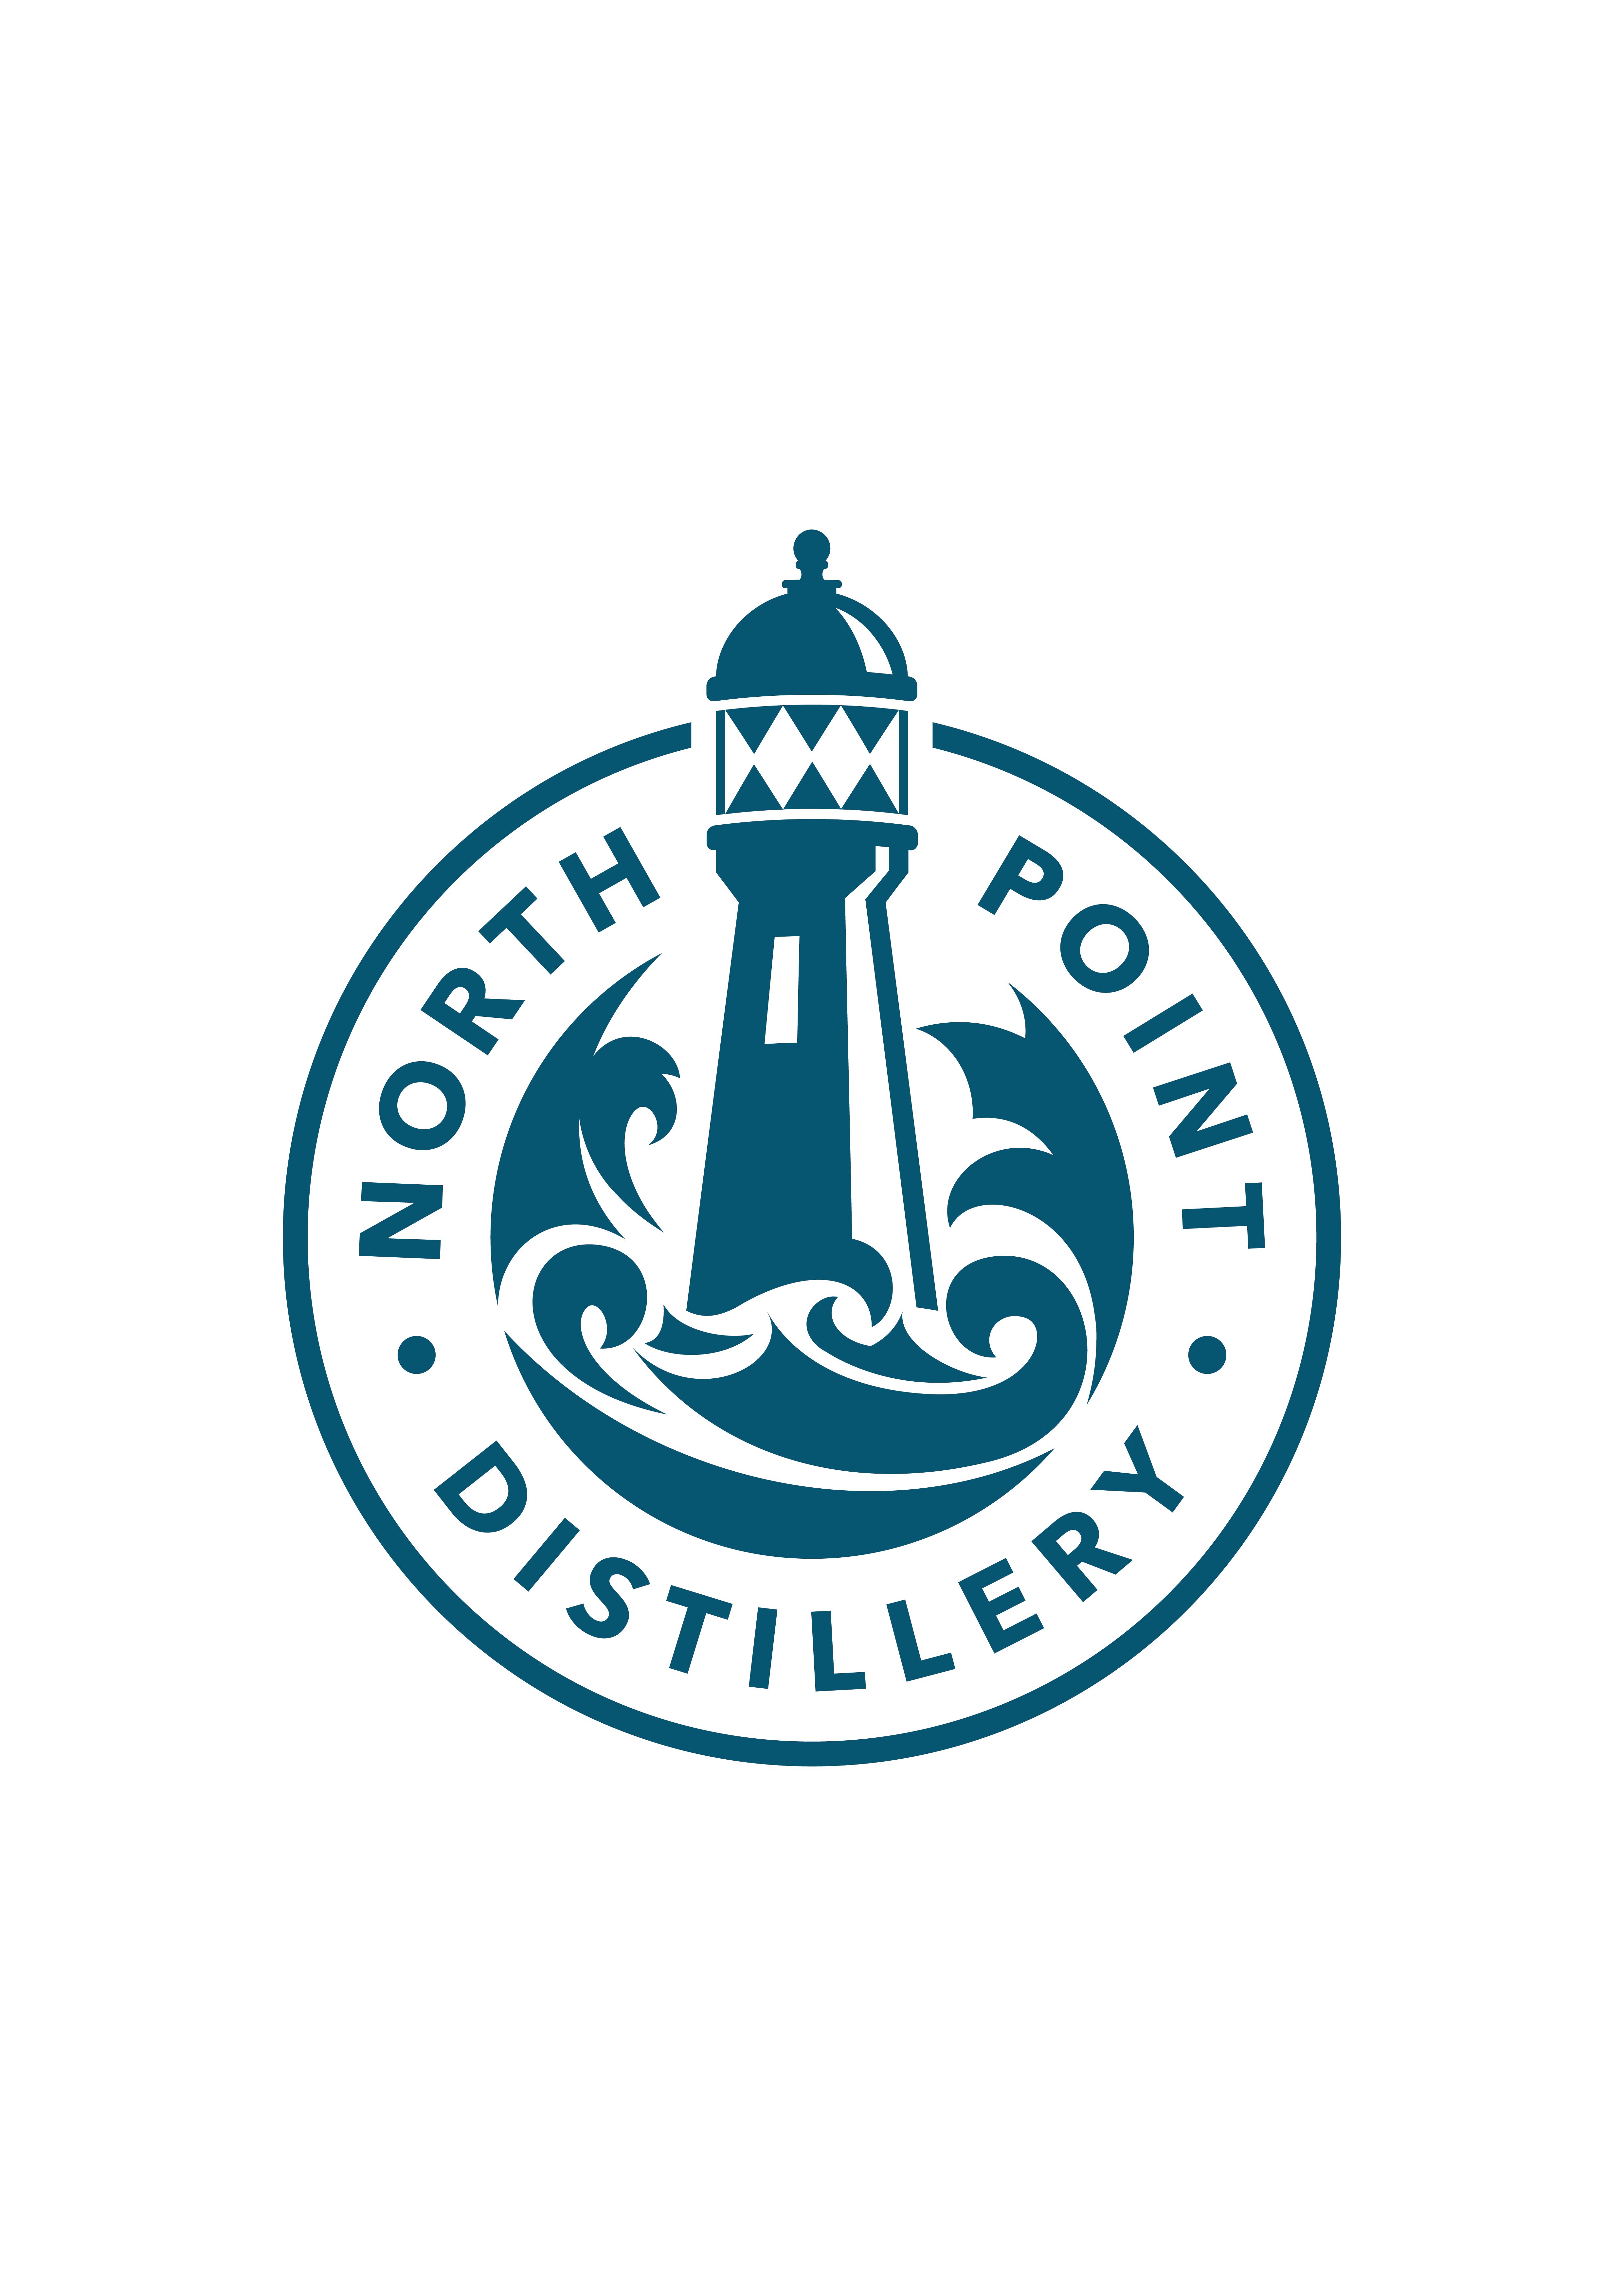 North Point Distillers Ltd